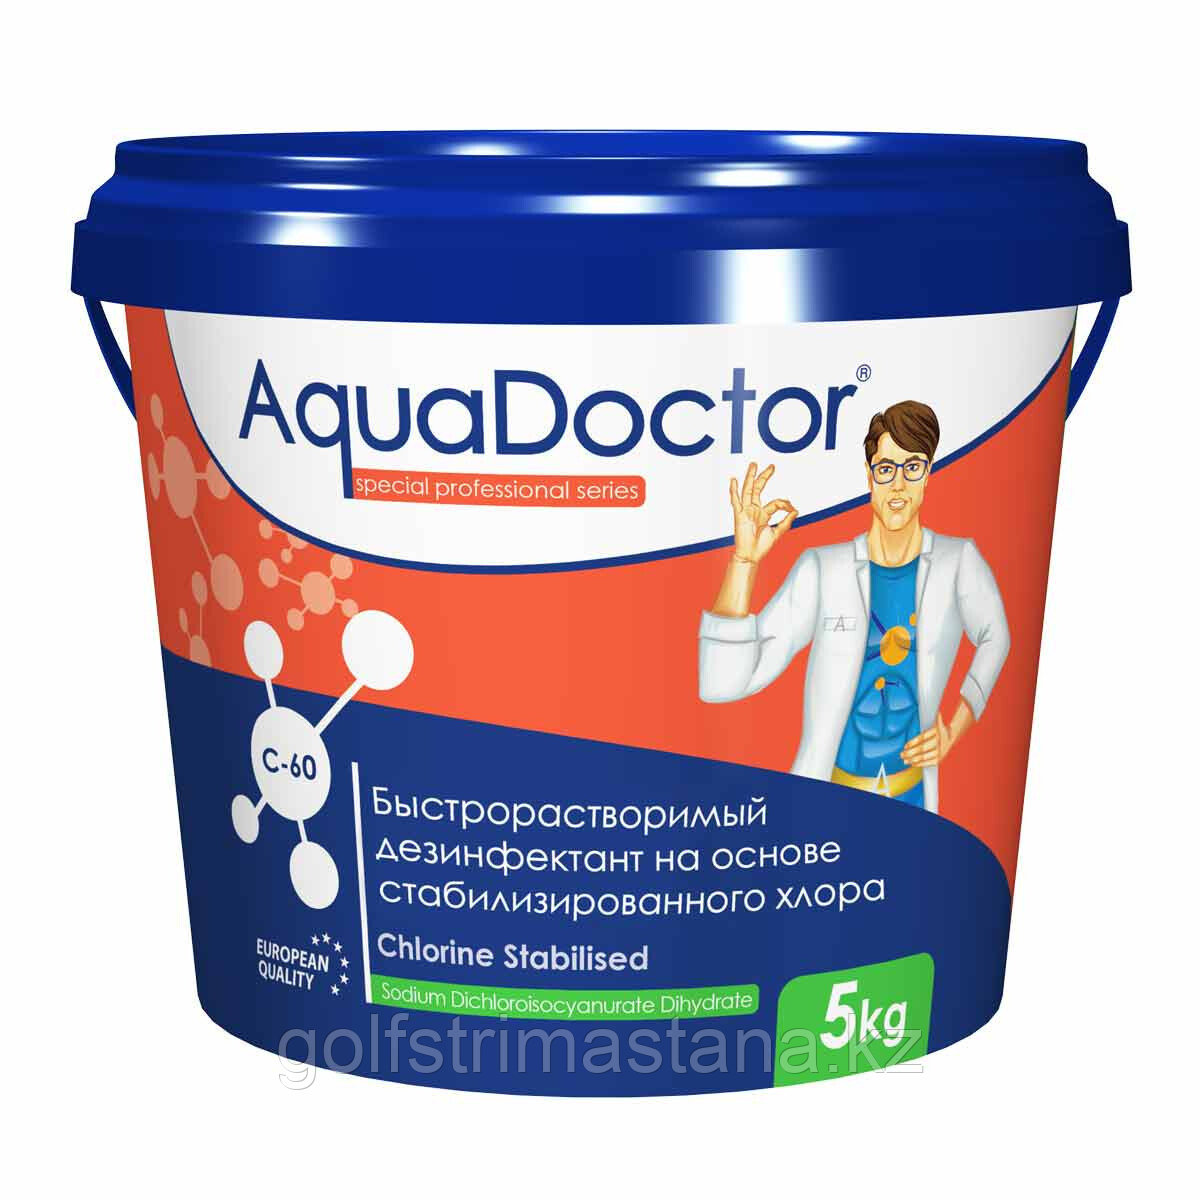 Дезинфектант C-60, 50 кг. быстрый хлор, AquaDoctor